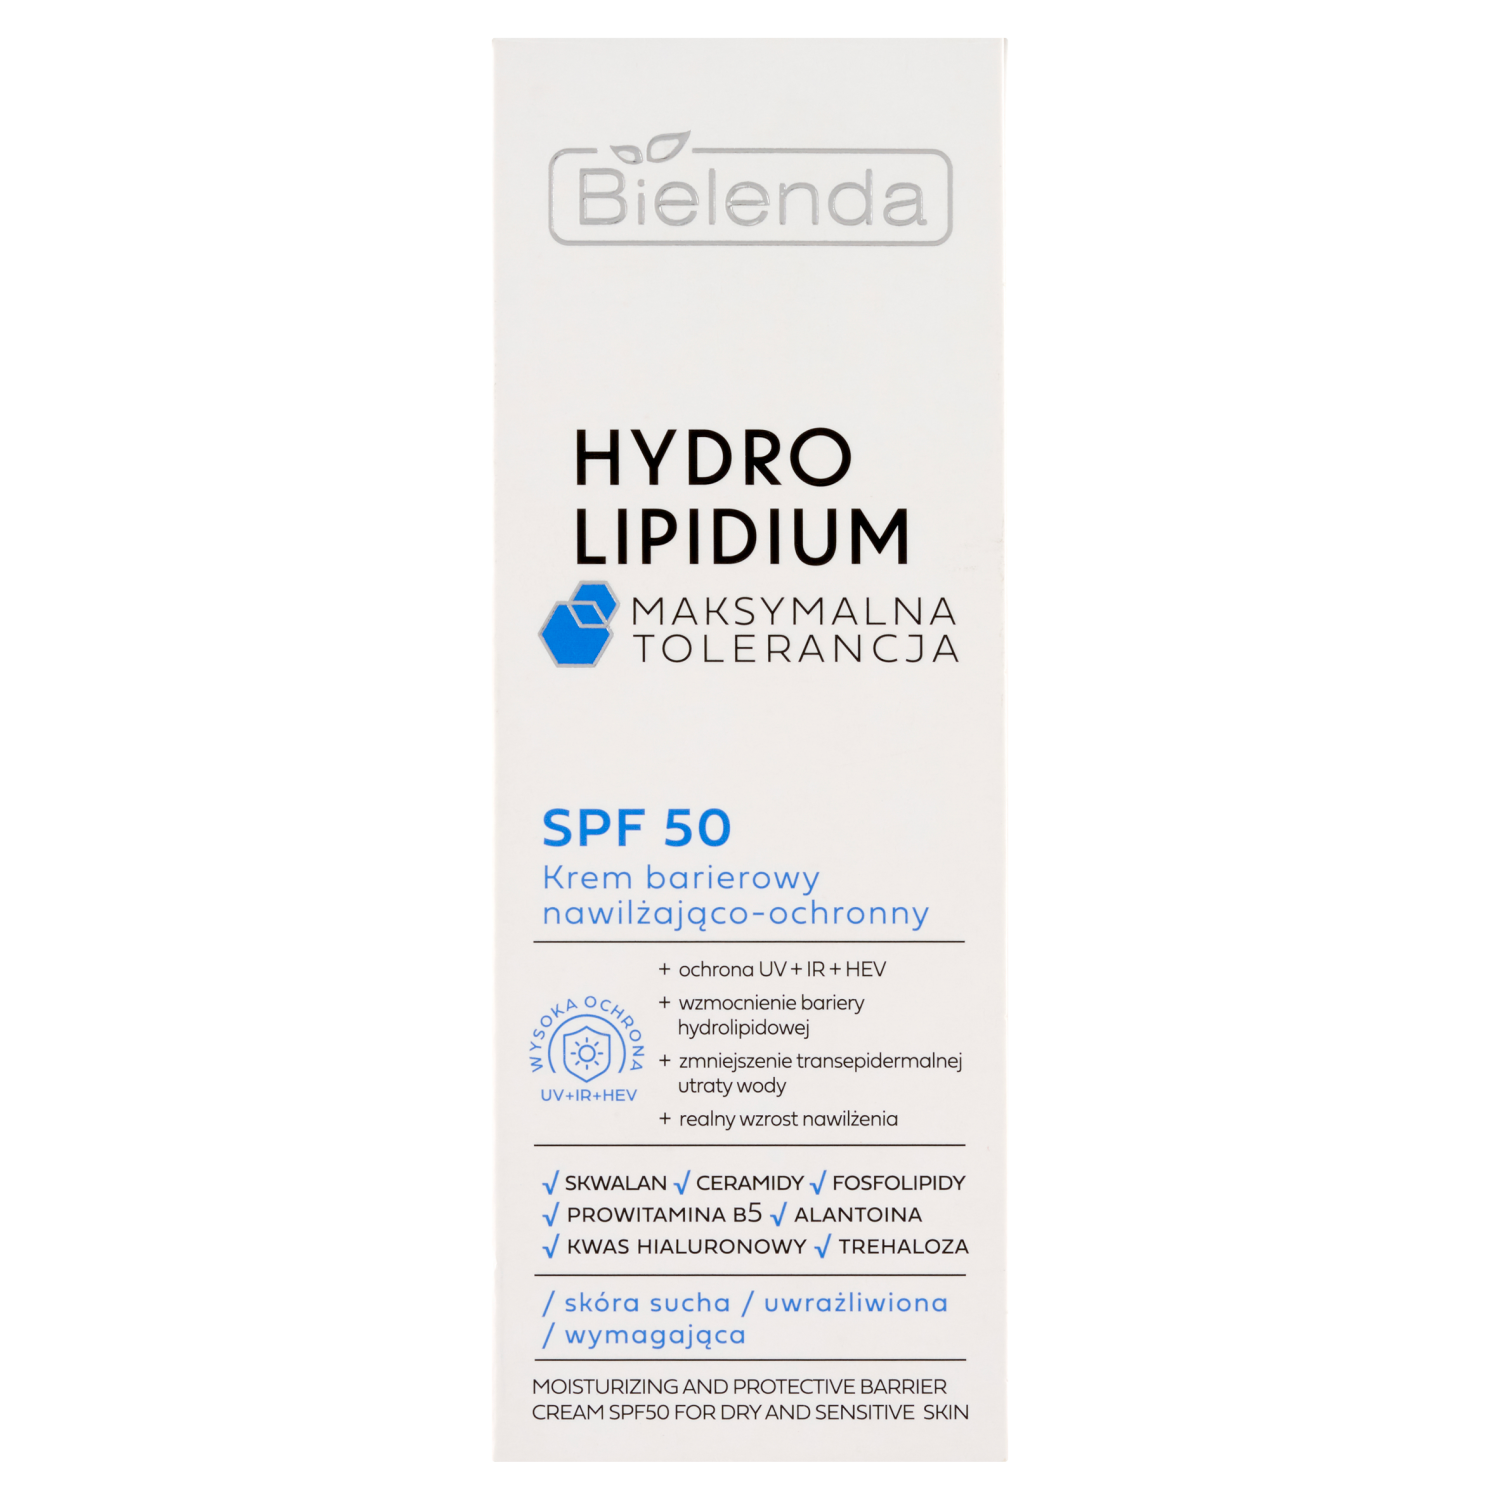 Увлажняющий и защитный барьерный крем с spf50 для лица Bielenda Hydro Lipidium, 30 мл